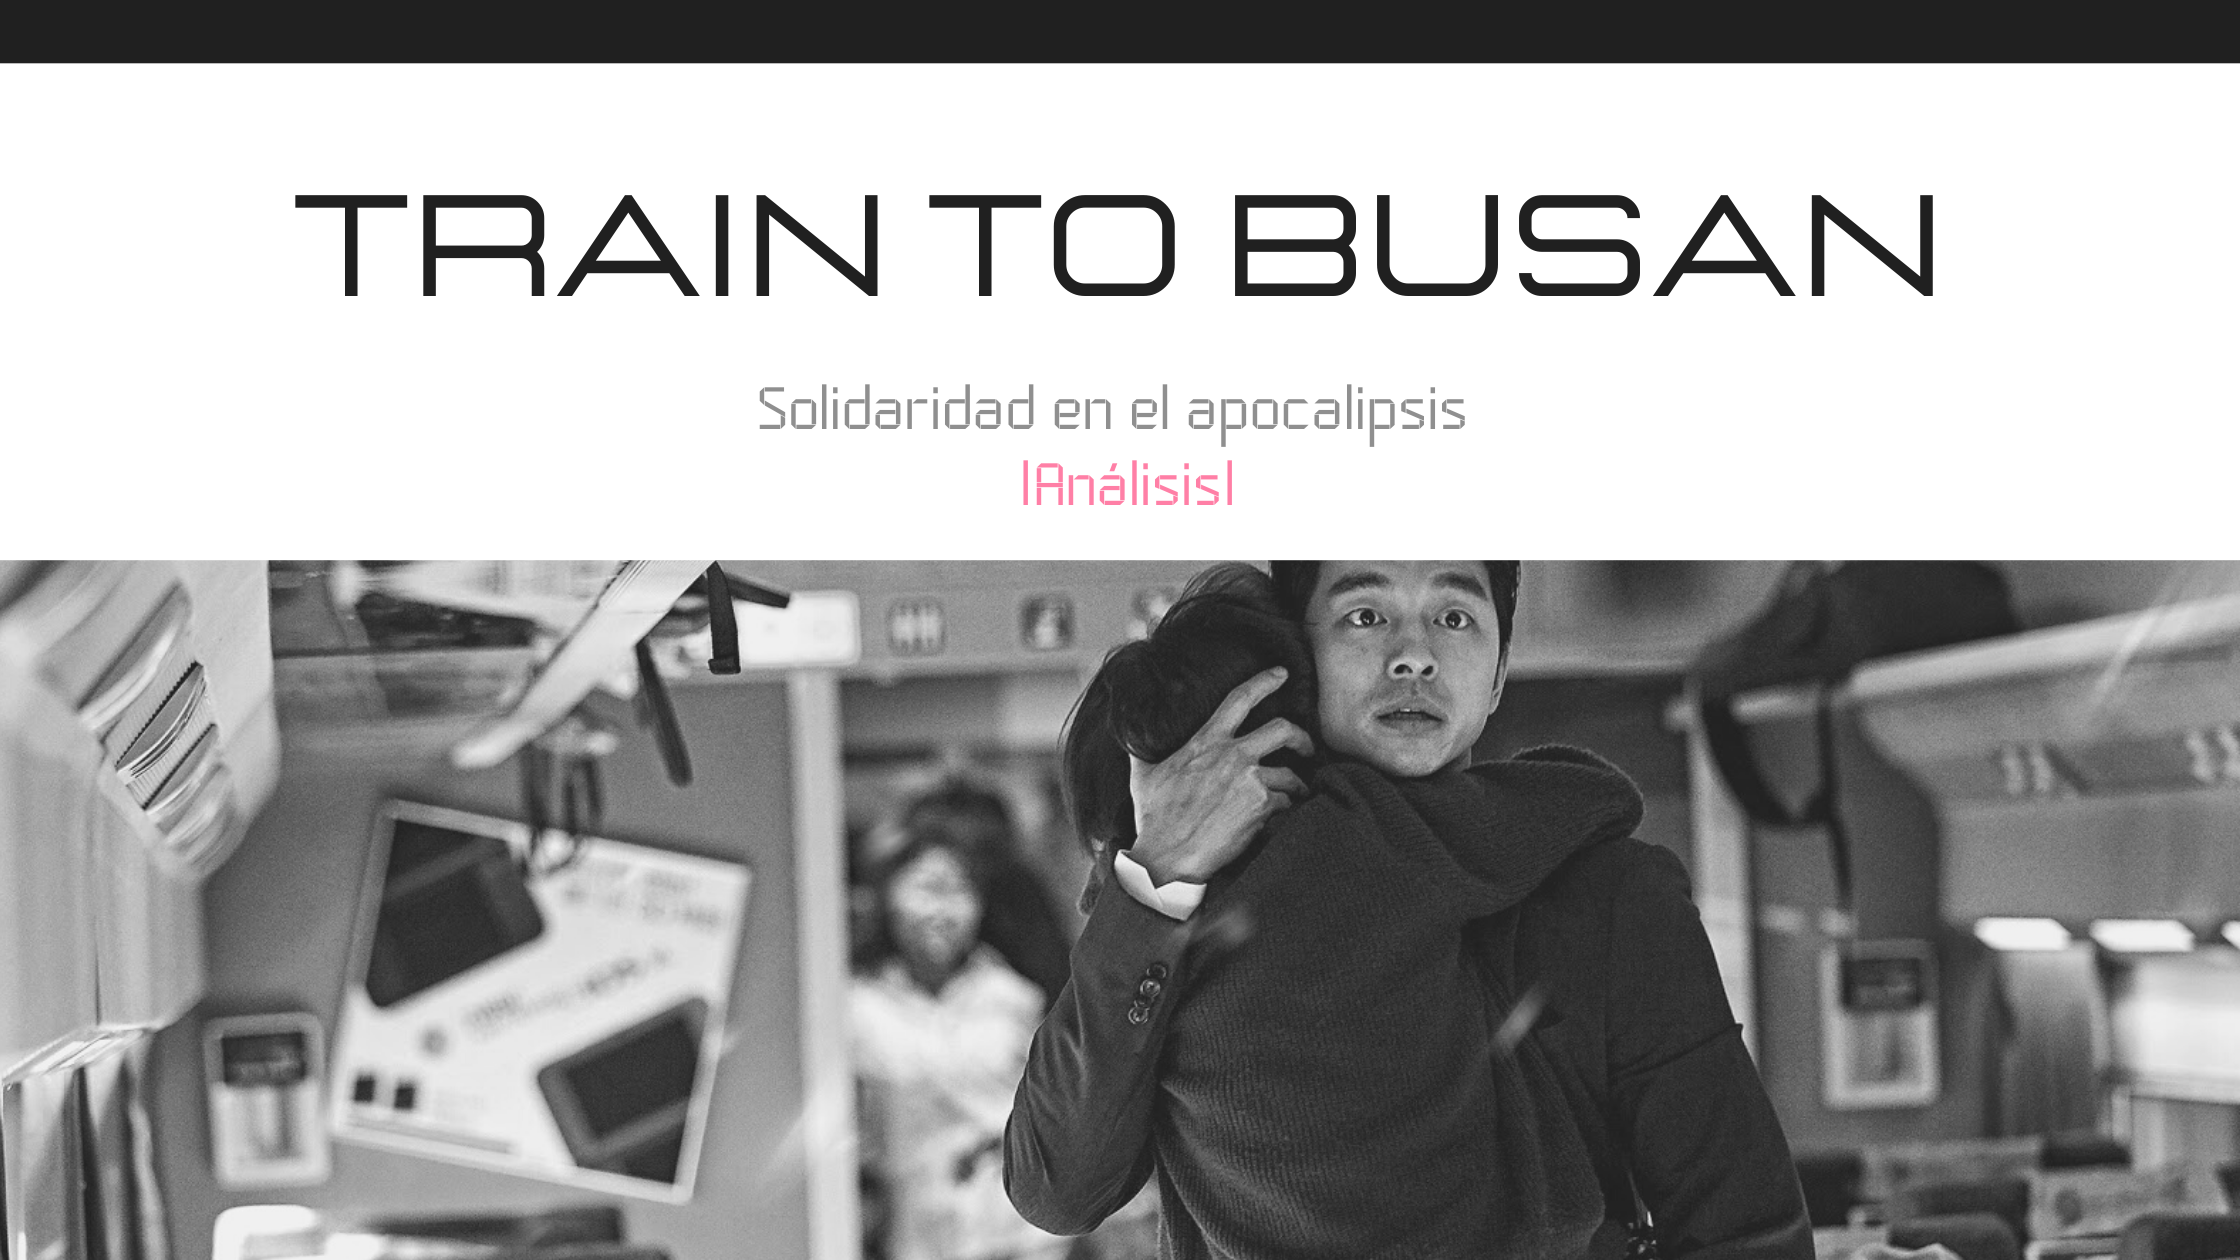 Train to Busan, solidaridad en el apocalipsis |Análisis|